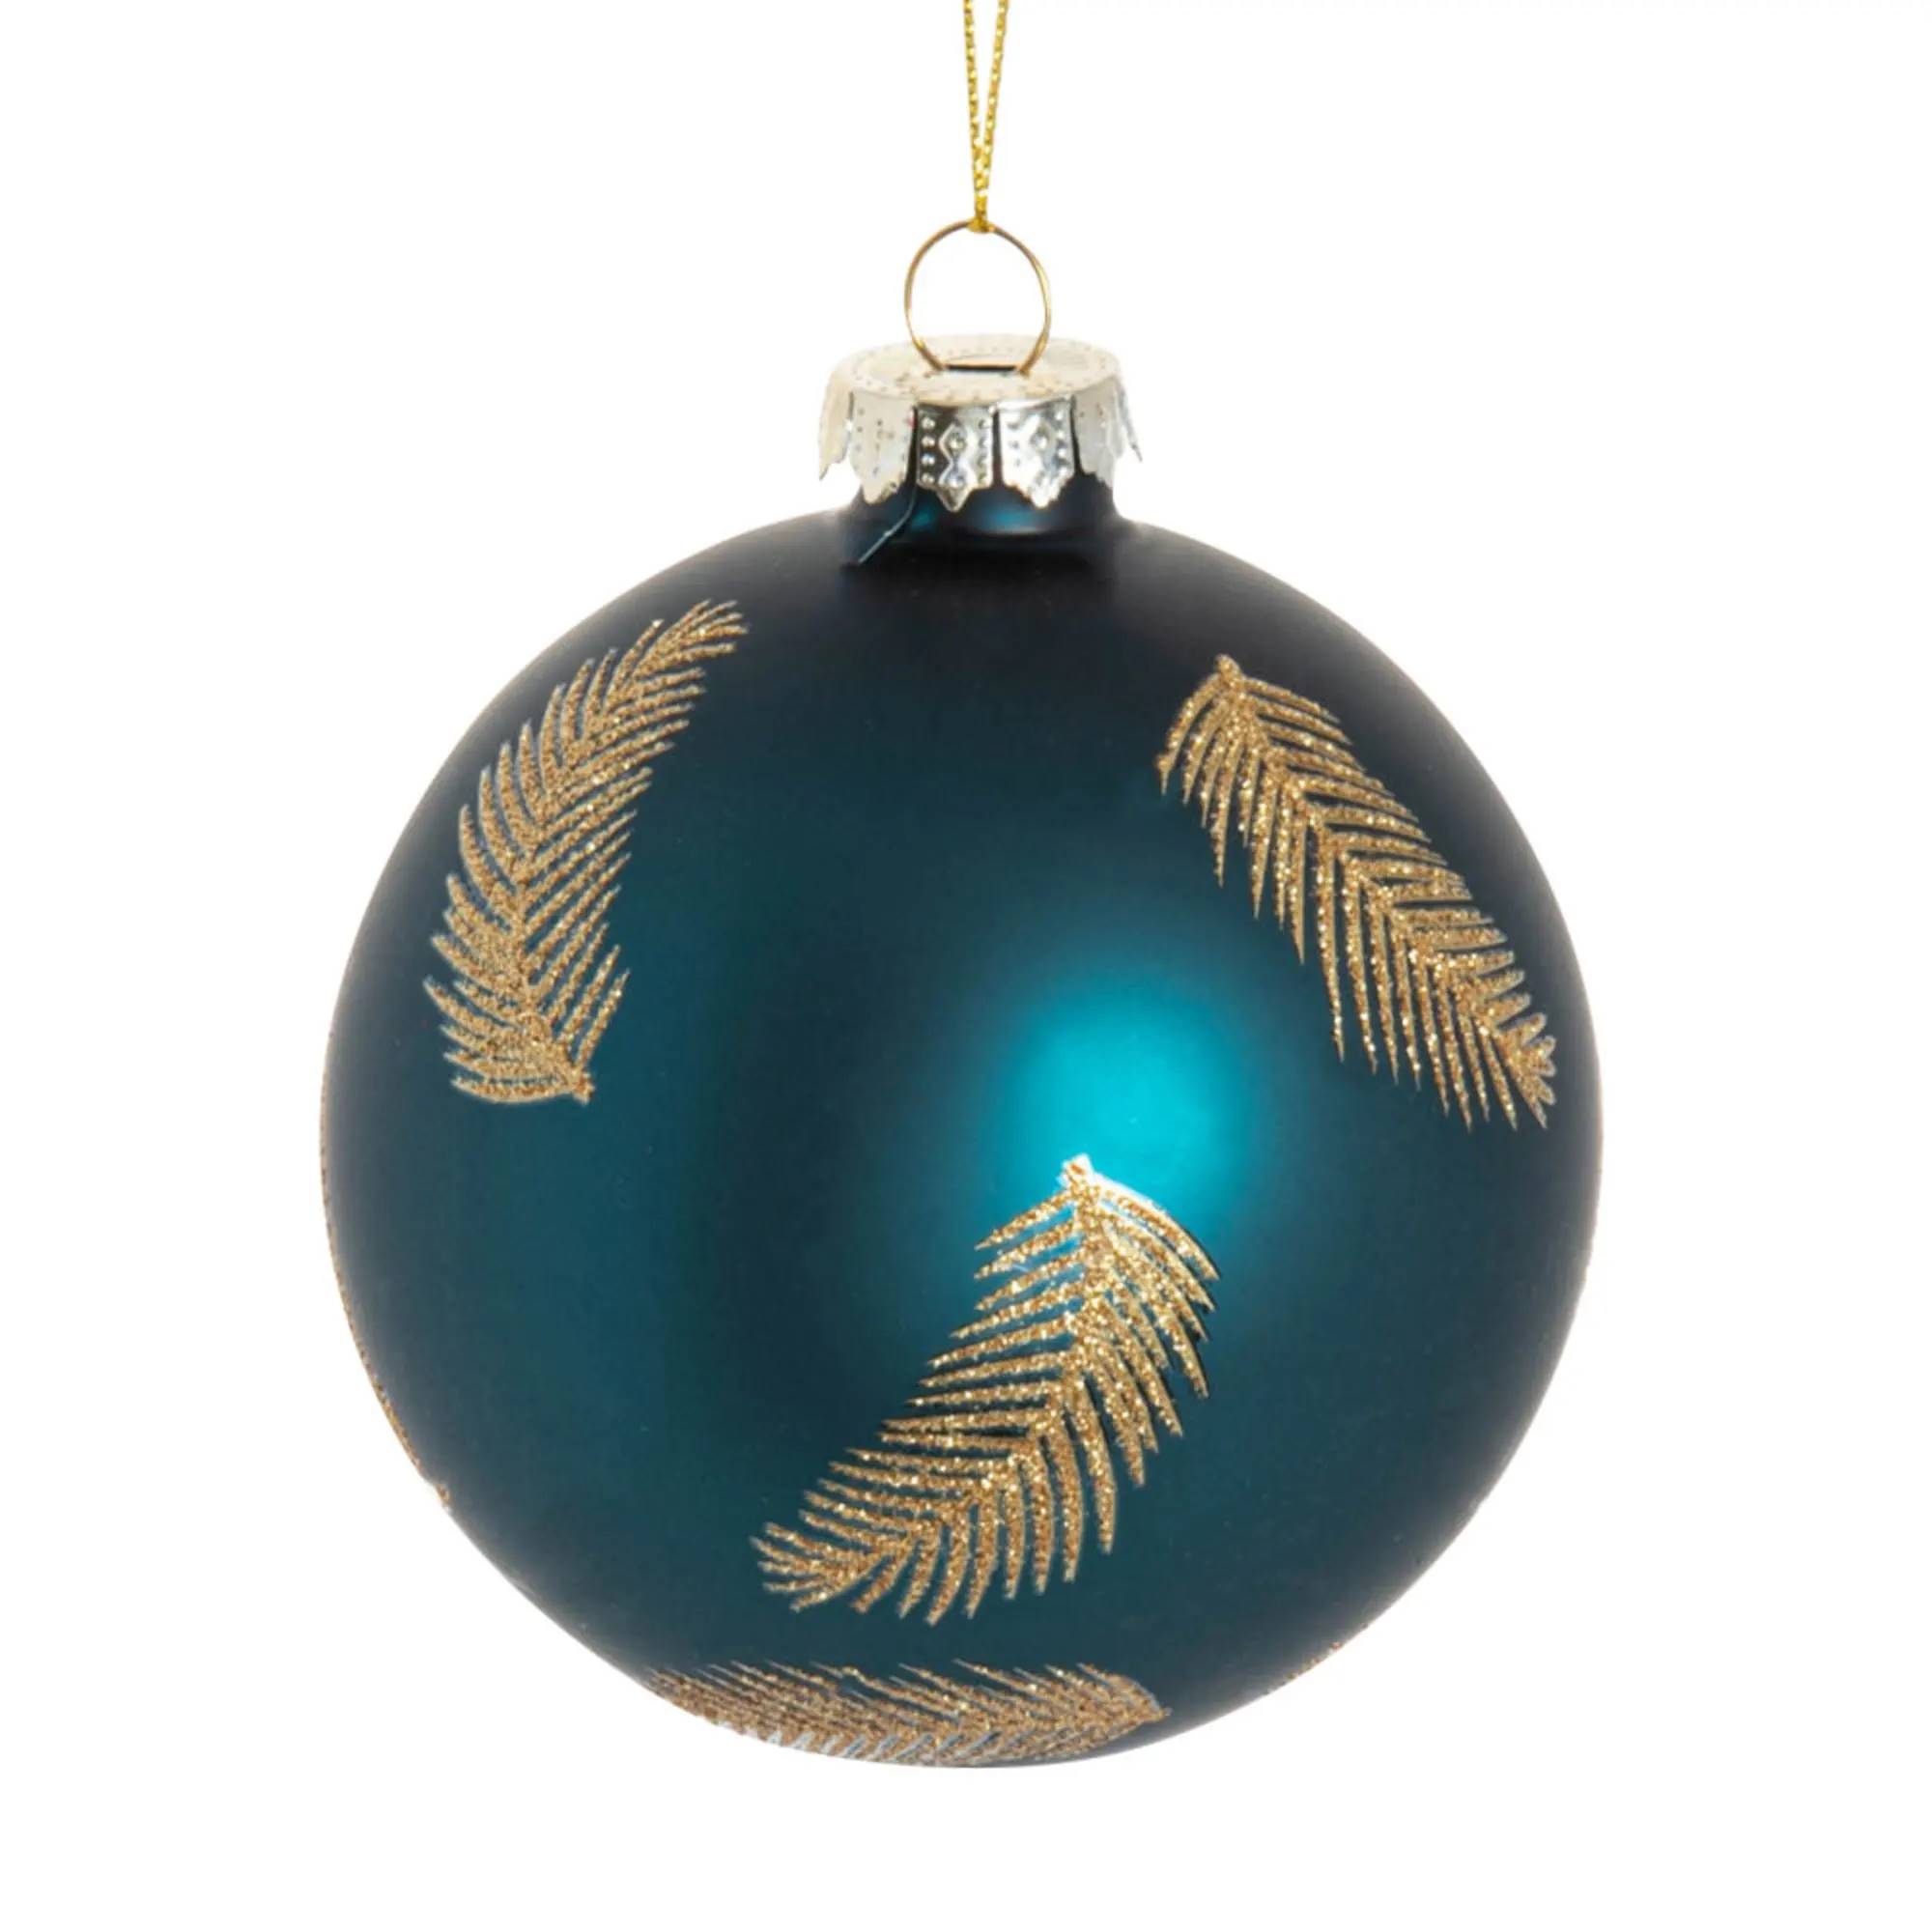 bola-de-navidad-de-cristal-azul-estampado-con-plumas-y-purpurina-1000-3-21-217977_3